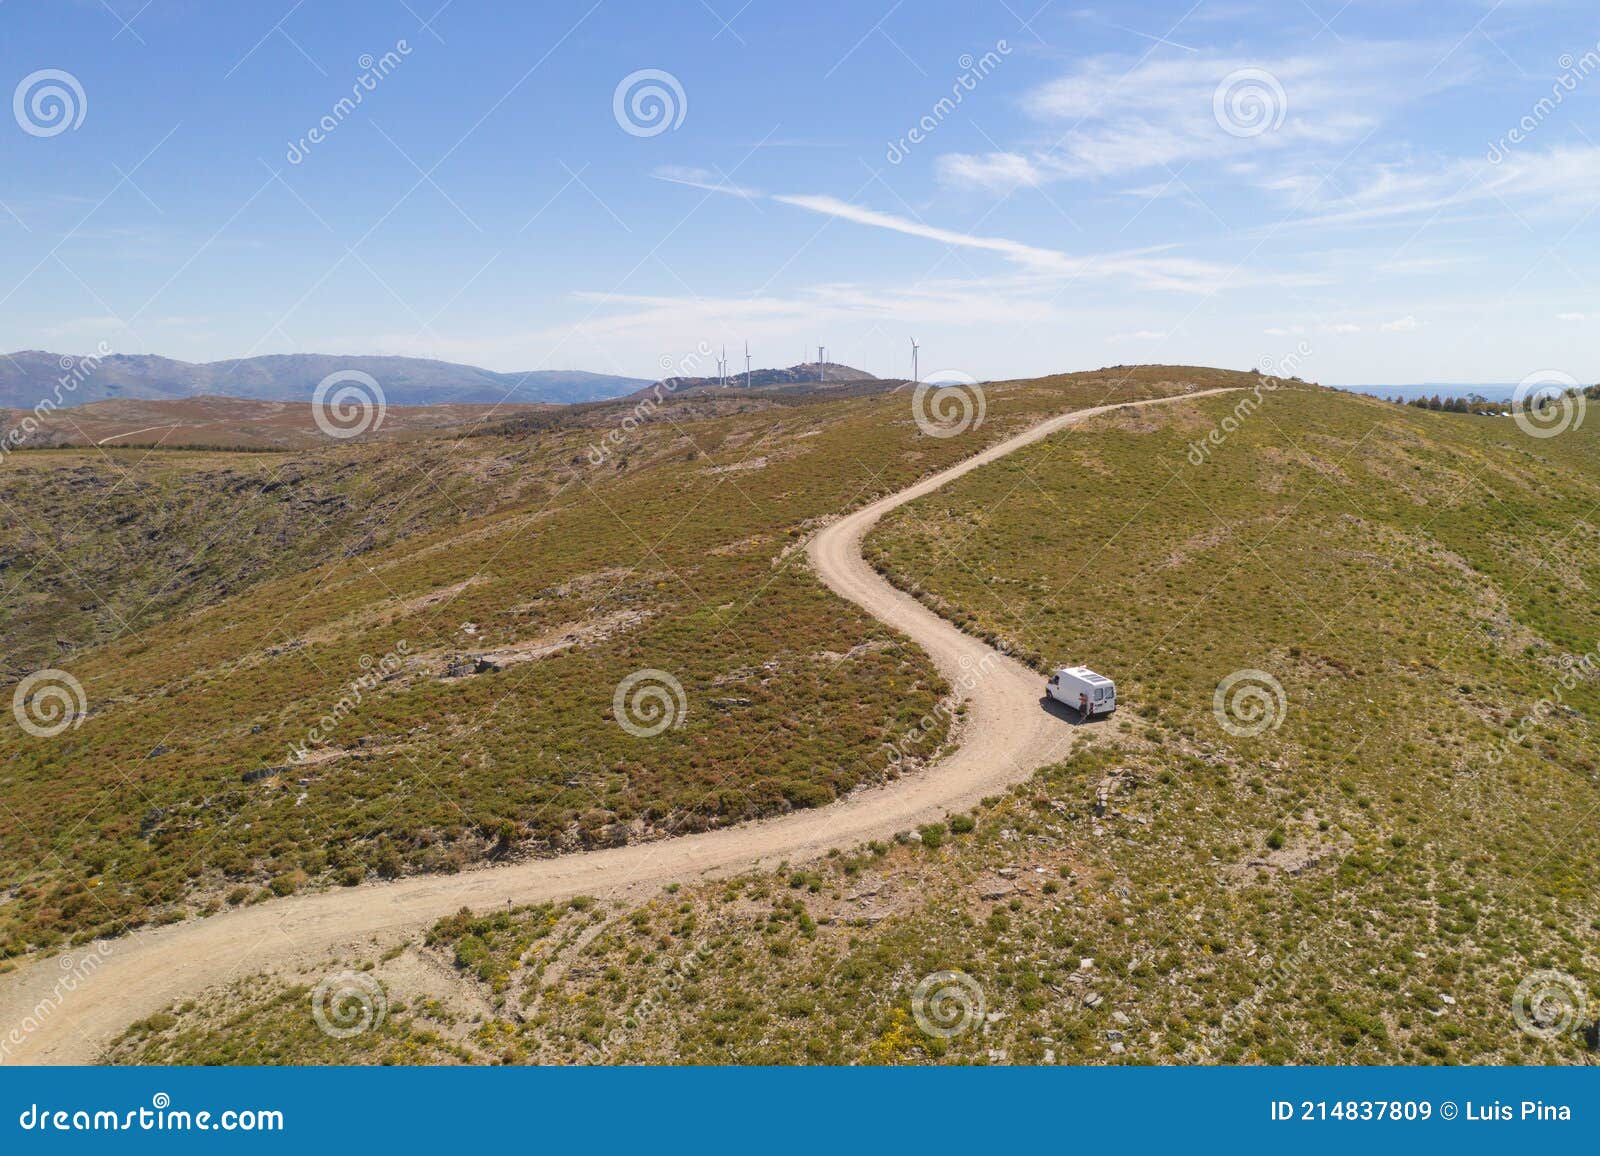 serra da freita drone aerial view of a camper van in arouca geopark on a road, in portugal